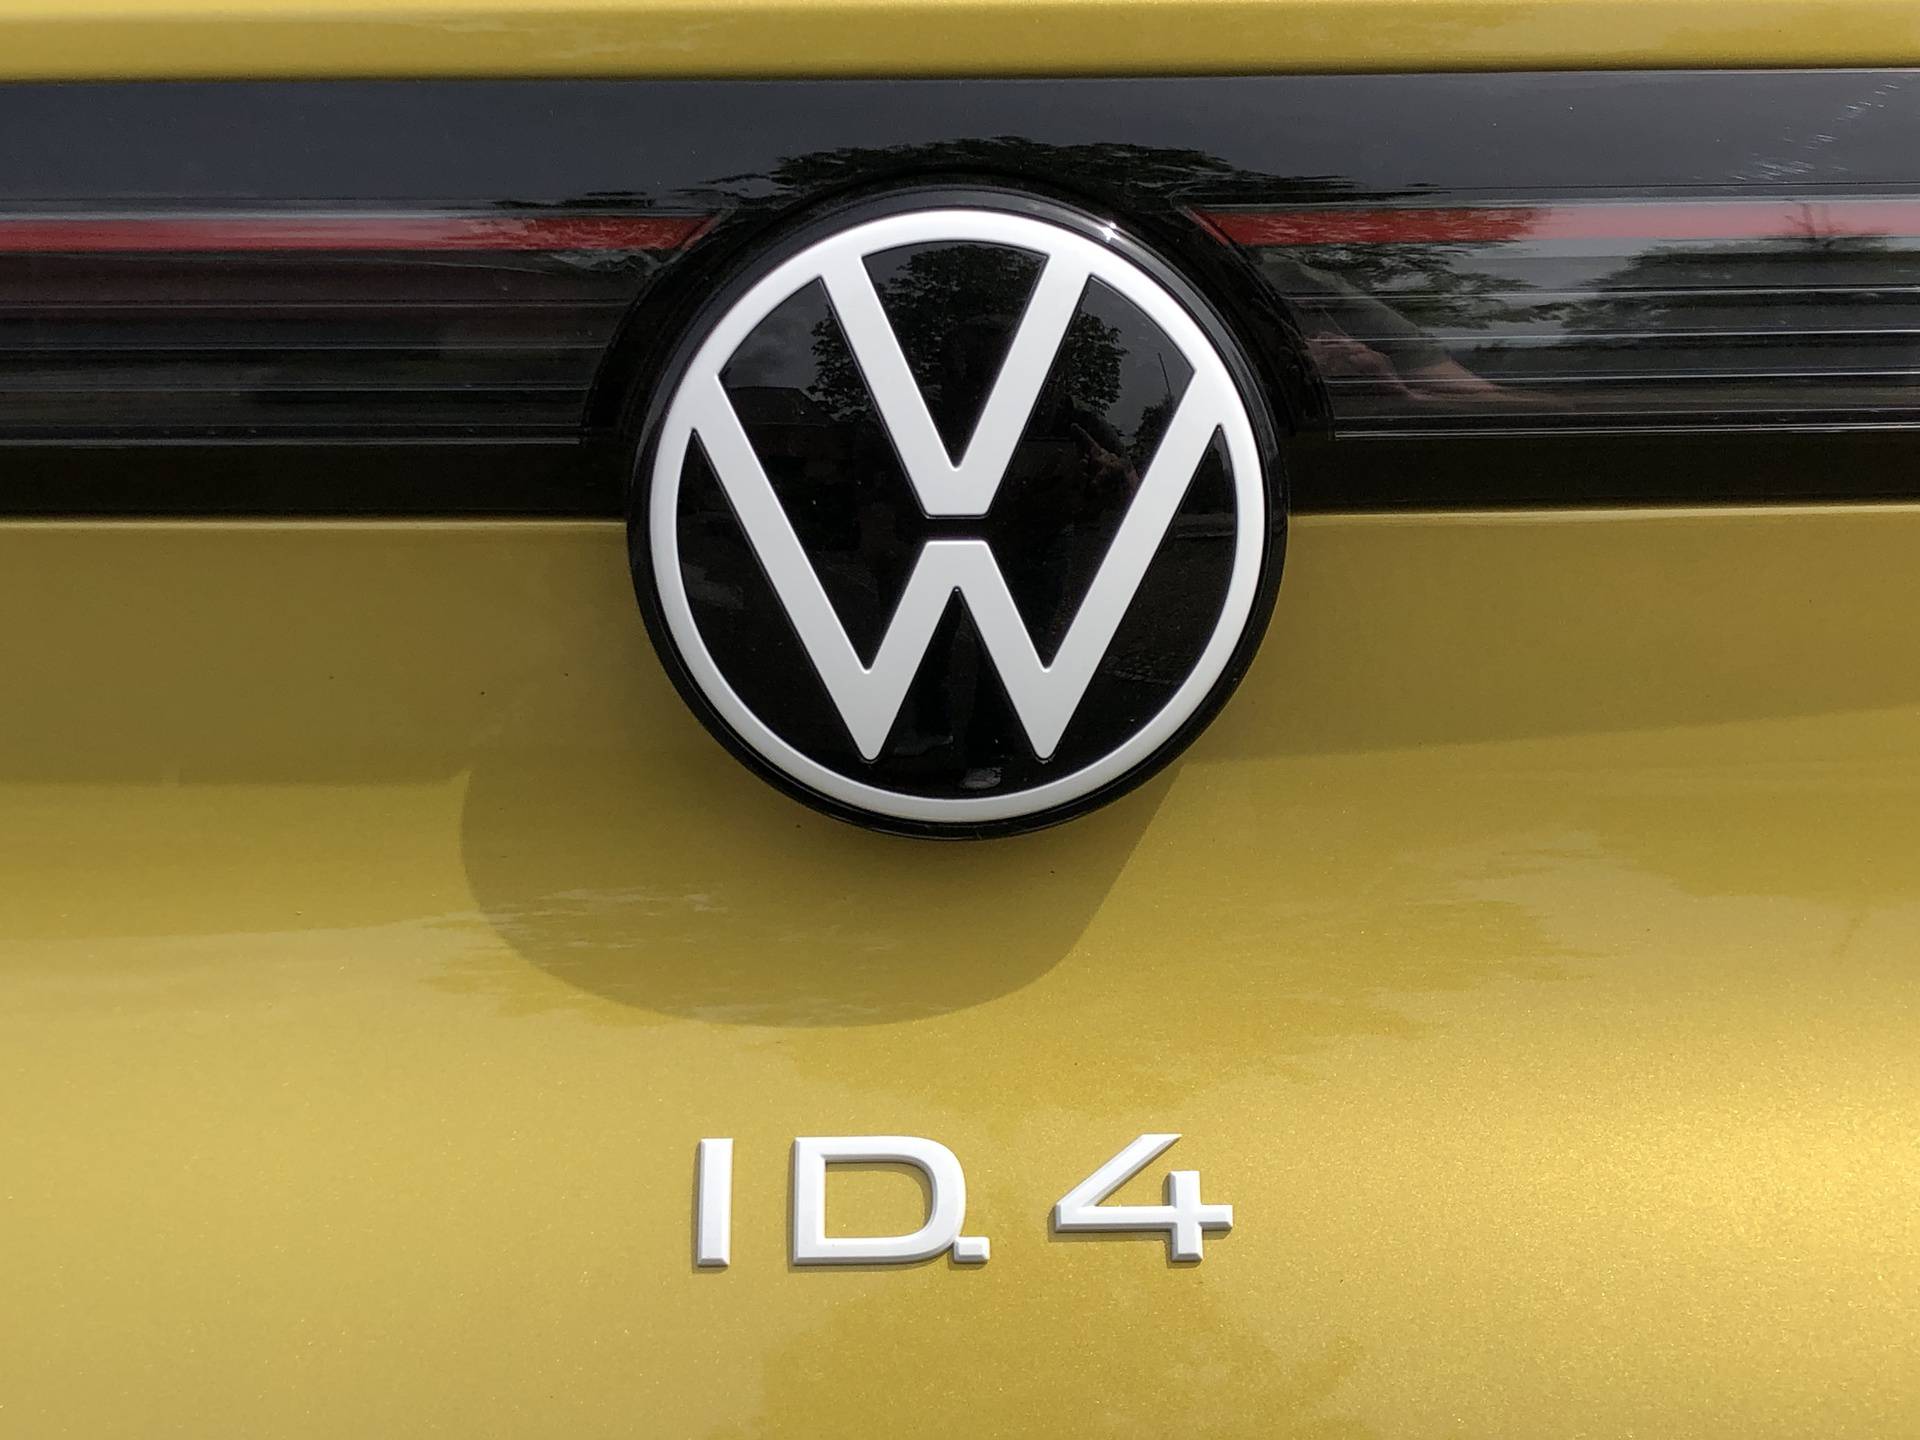 Prvi test: VW je brzo naučio, novi ID.4 je jedan od najboljih električnih auta današnjice